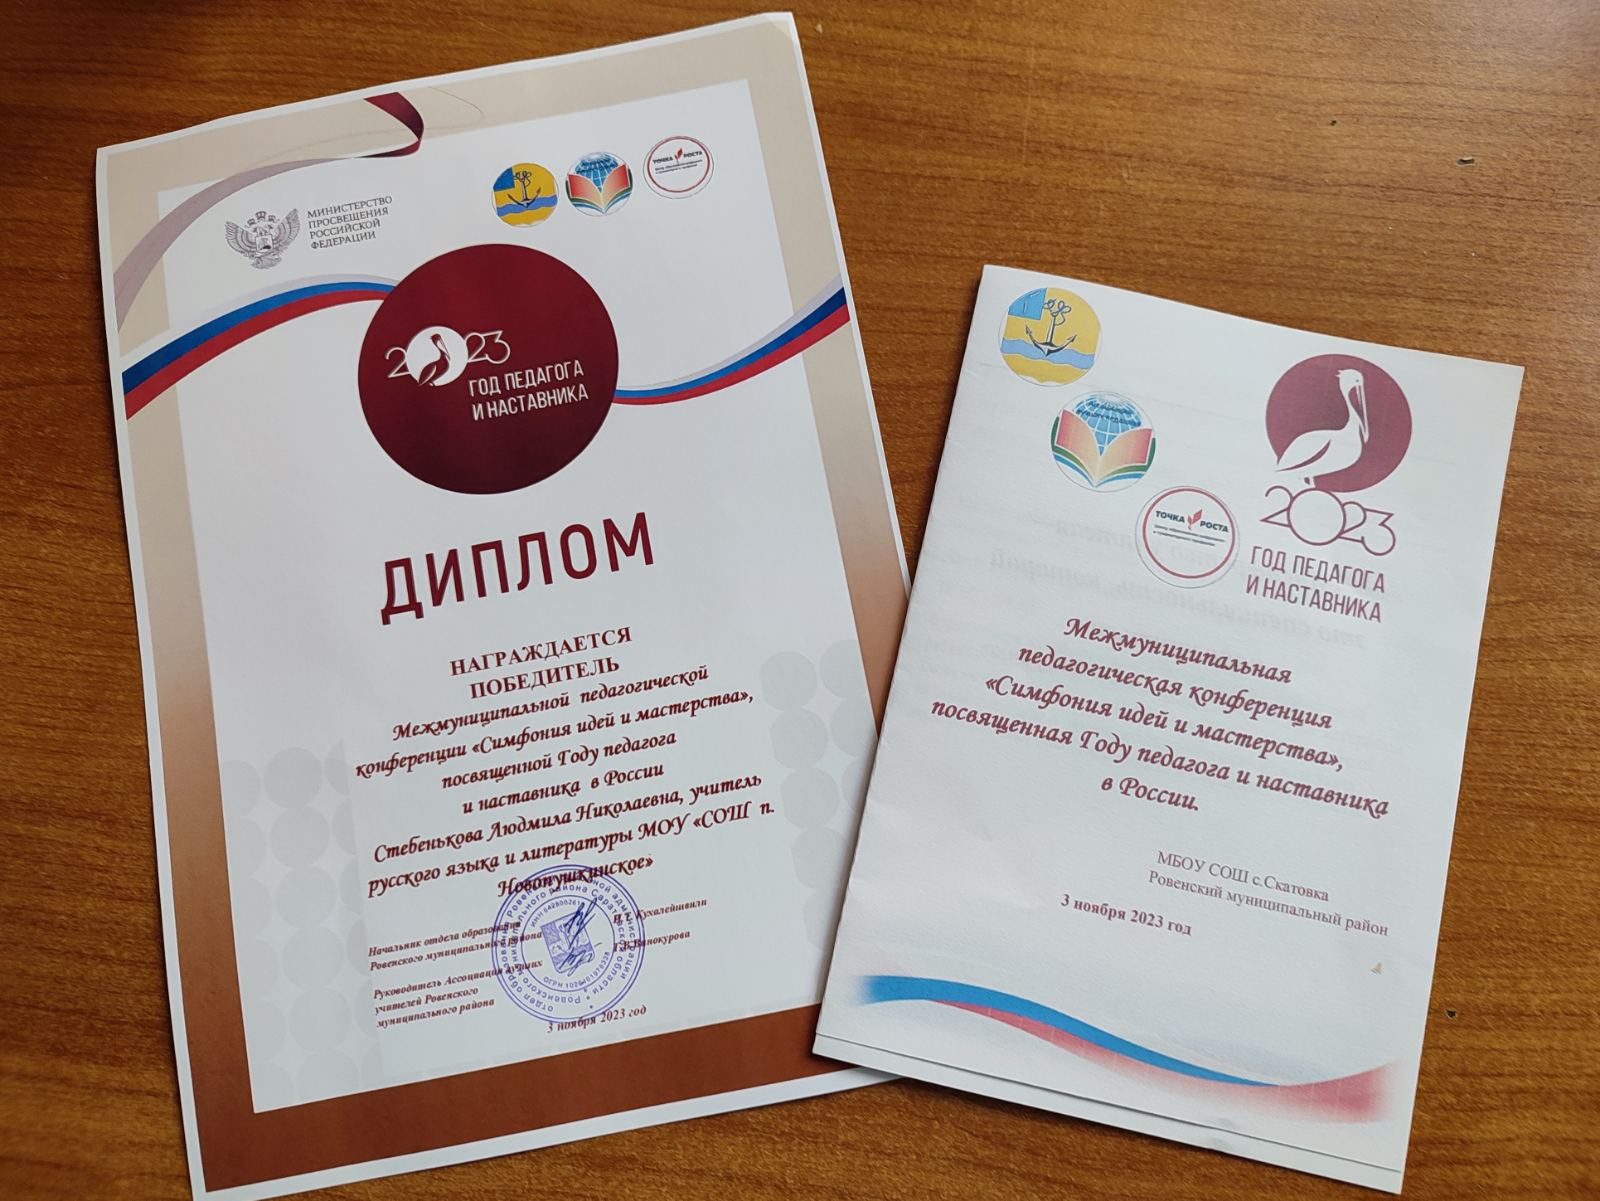 3 ноября 2023 года в МБОУ СОШ с. Скатовка Ровенского района состоялась межмуниципальная педагогическая конференция «Симфония идей и мастерства».